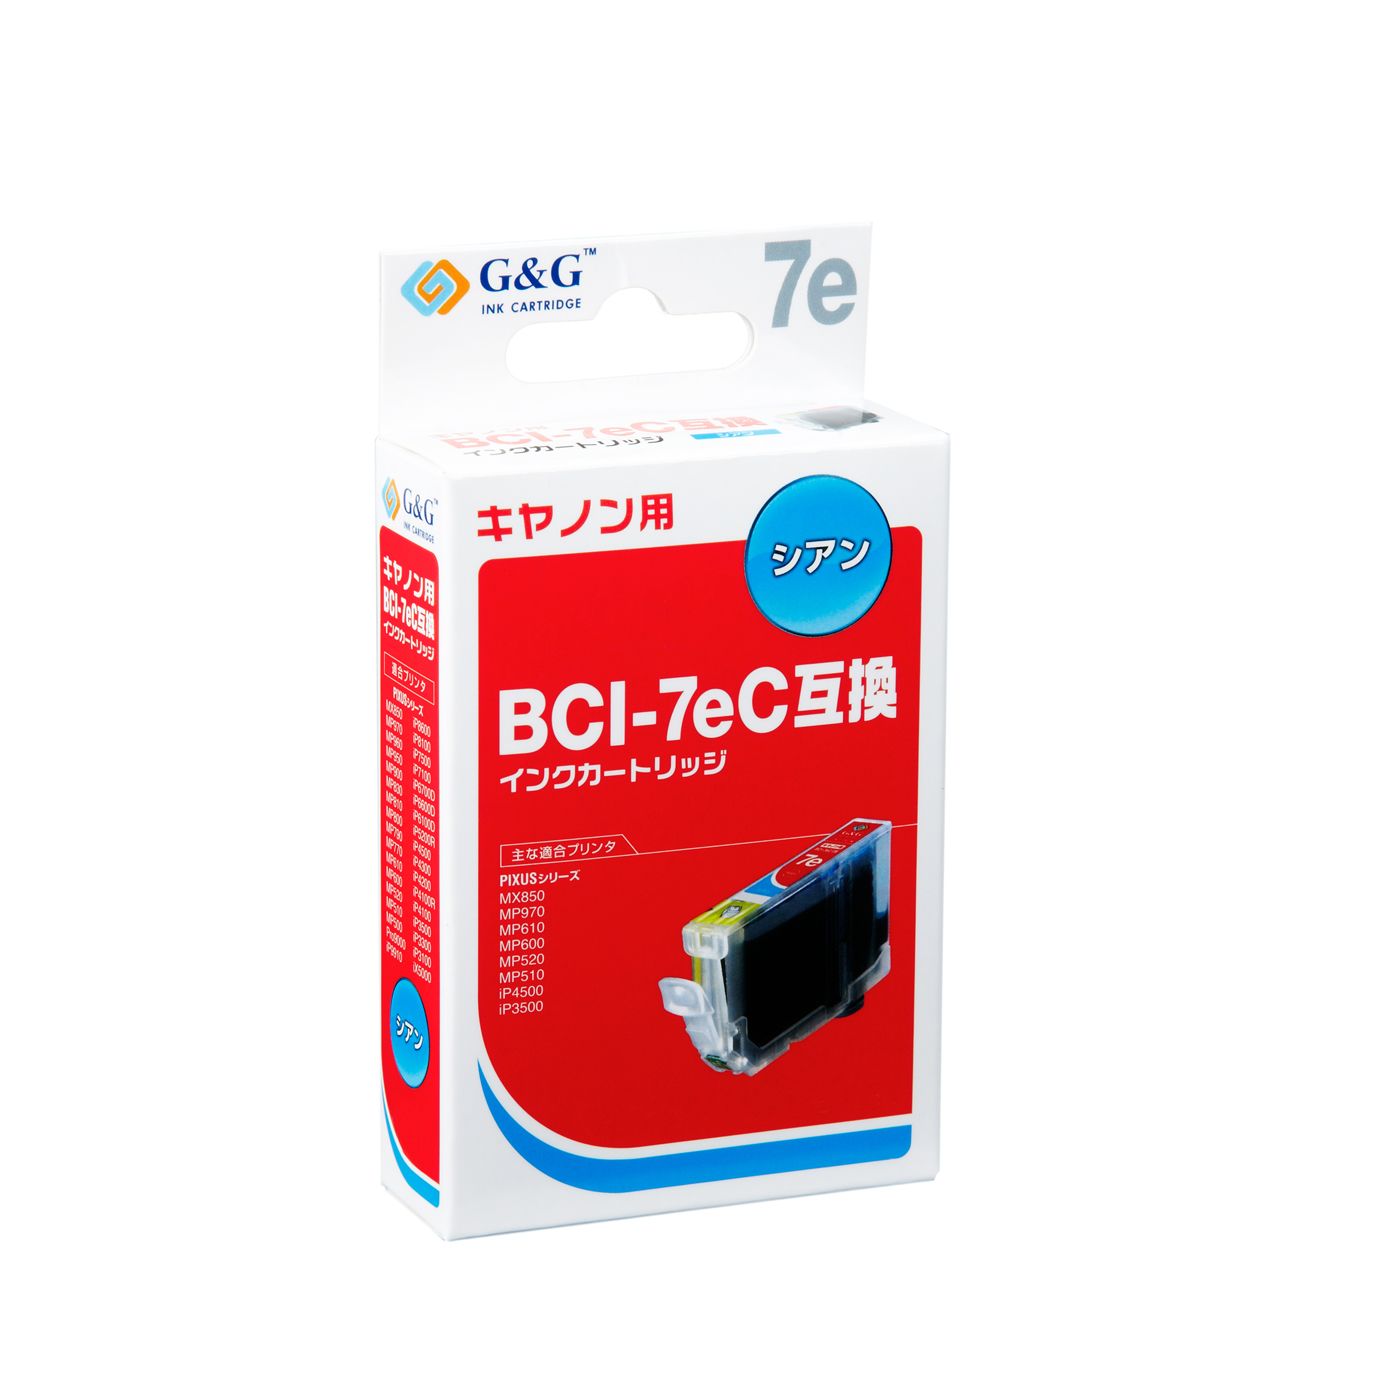 HBC-7EC